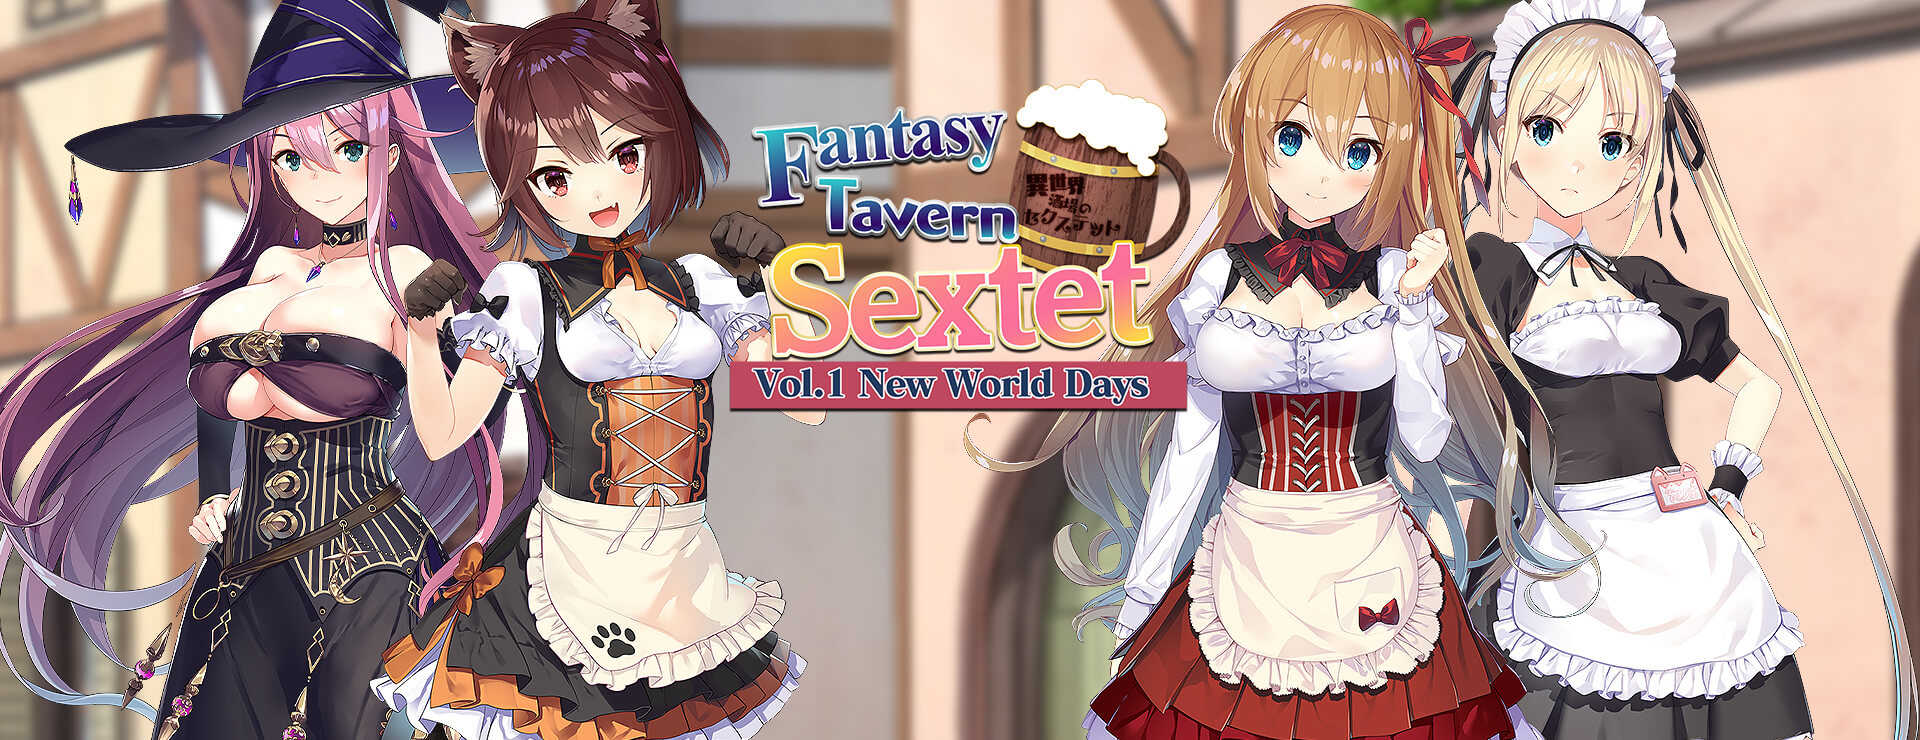 Fantasy Tavern Sextet - Vol.1 New World Days - Powieść wizualna Gra